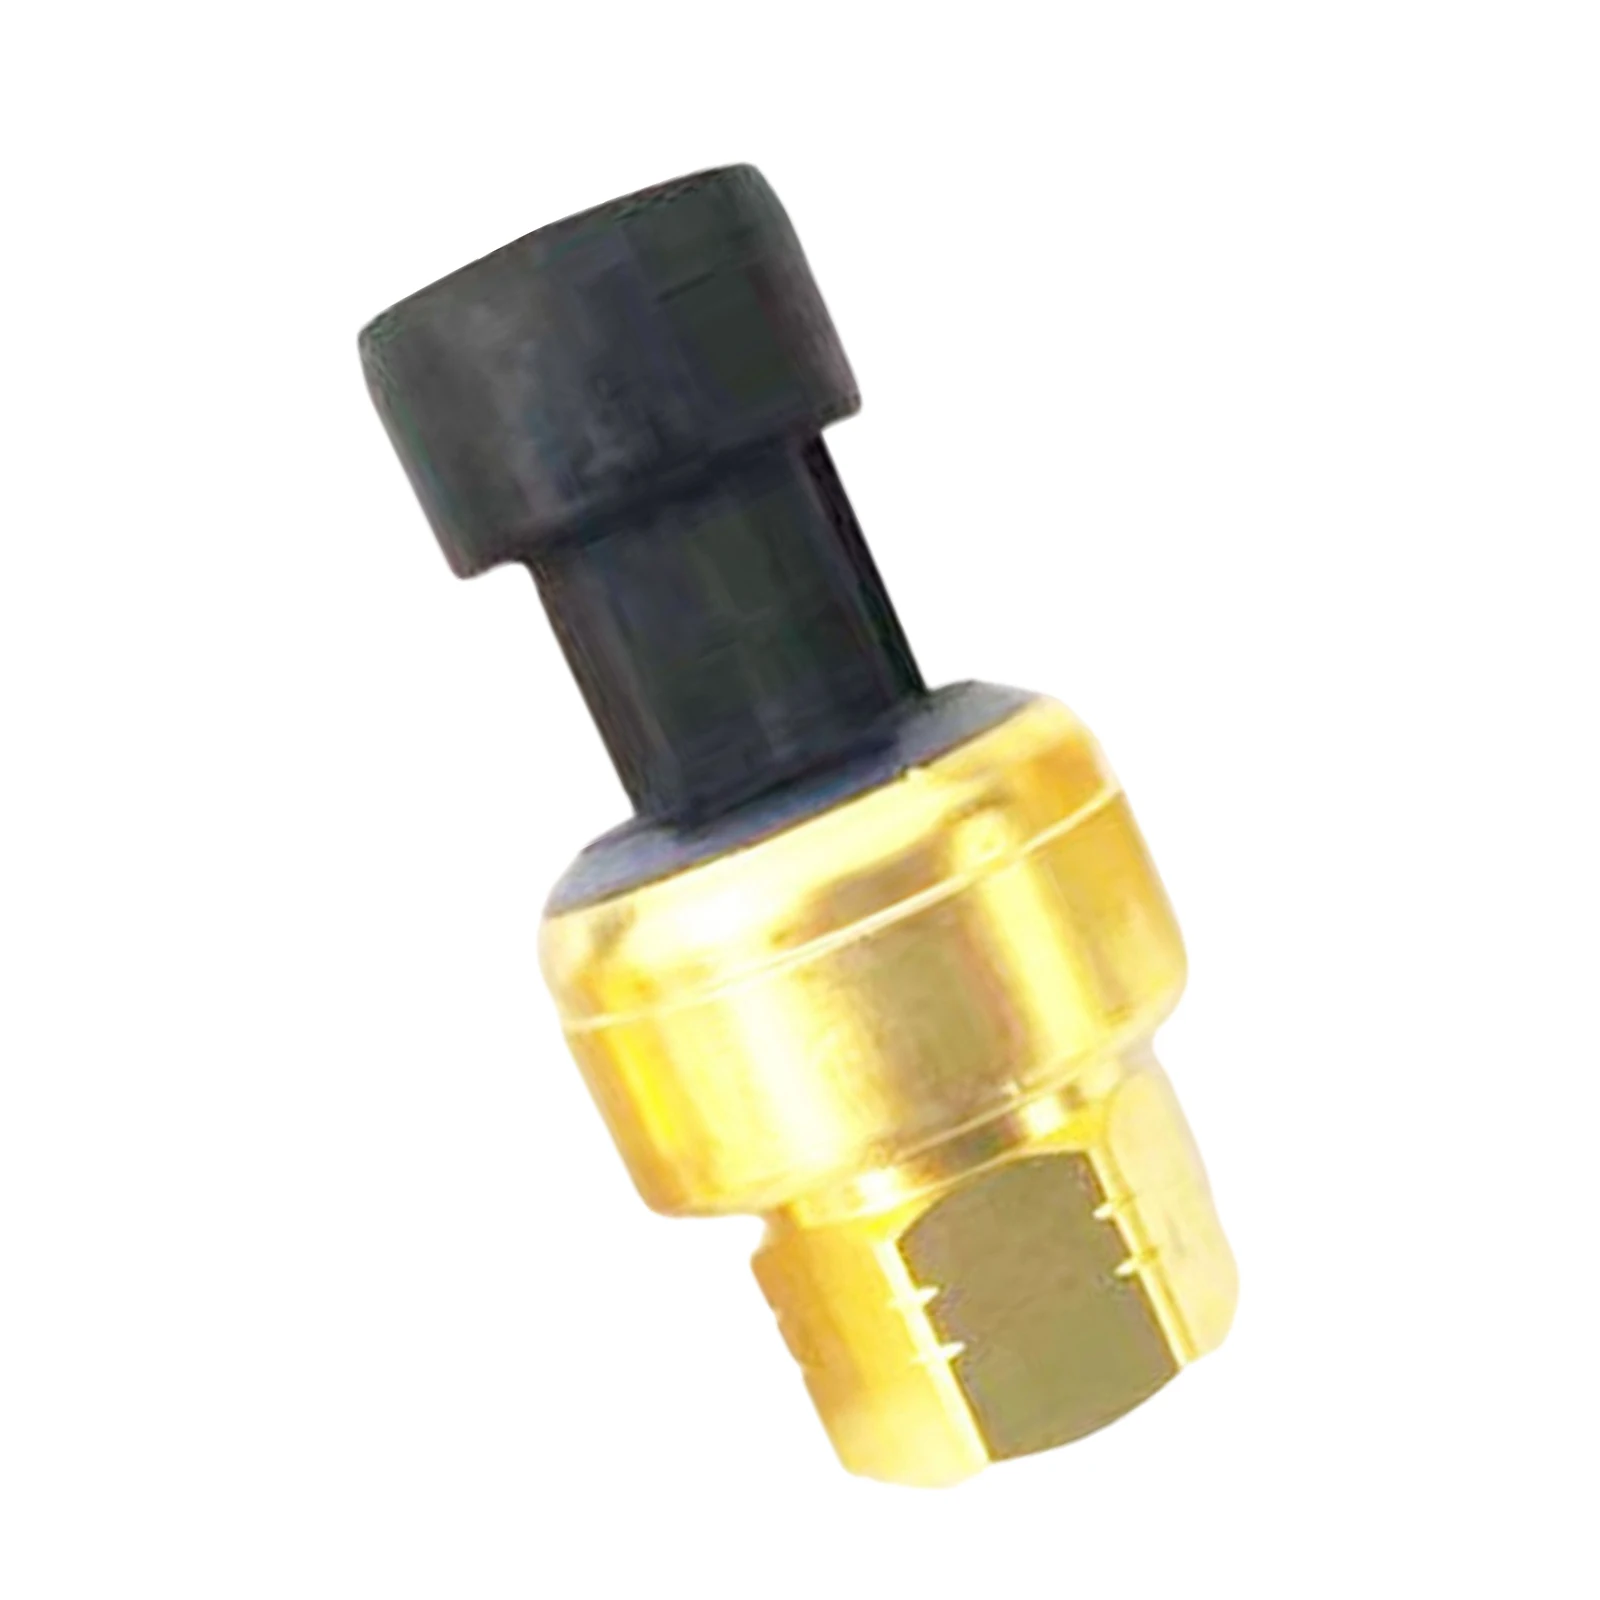 Oil Pressure Sensor 194-6724 Excavator Transducer Fit for Cat Caterpillar C15 C12